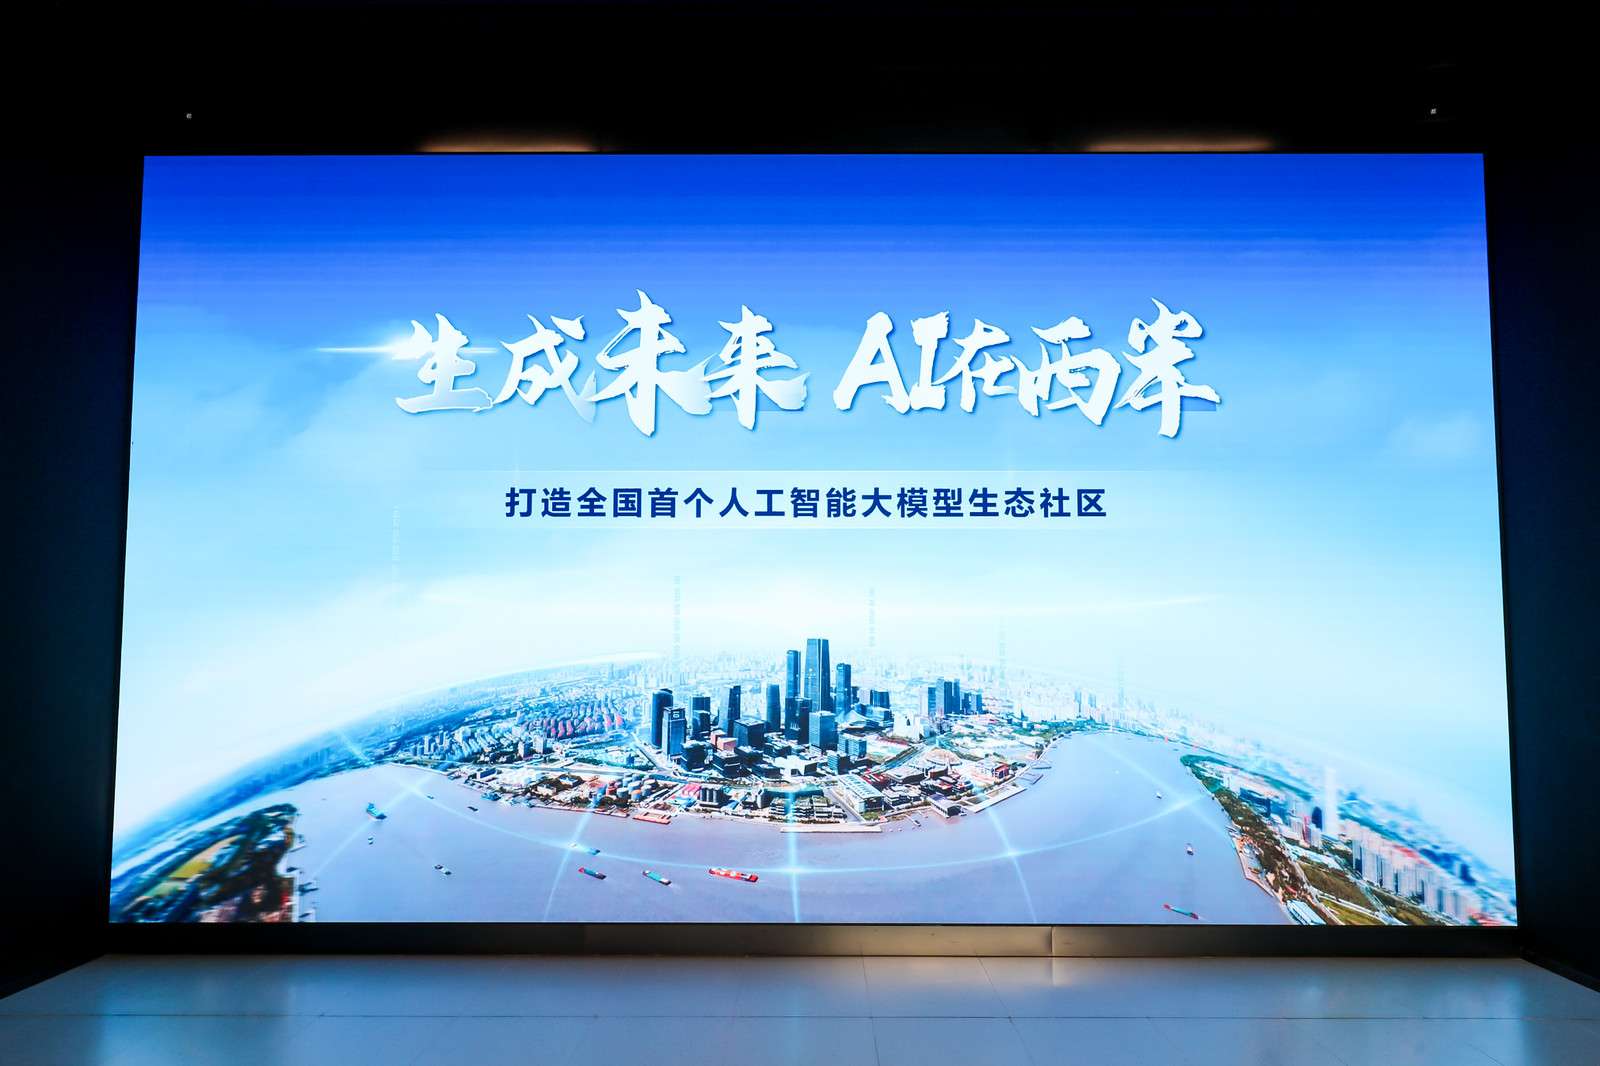 万千景象望上海 | 经济新动能酝酿新机会，上海立异生态呈现勃勃生气希望